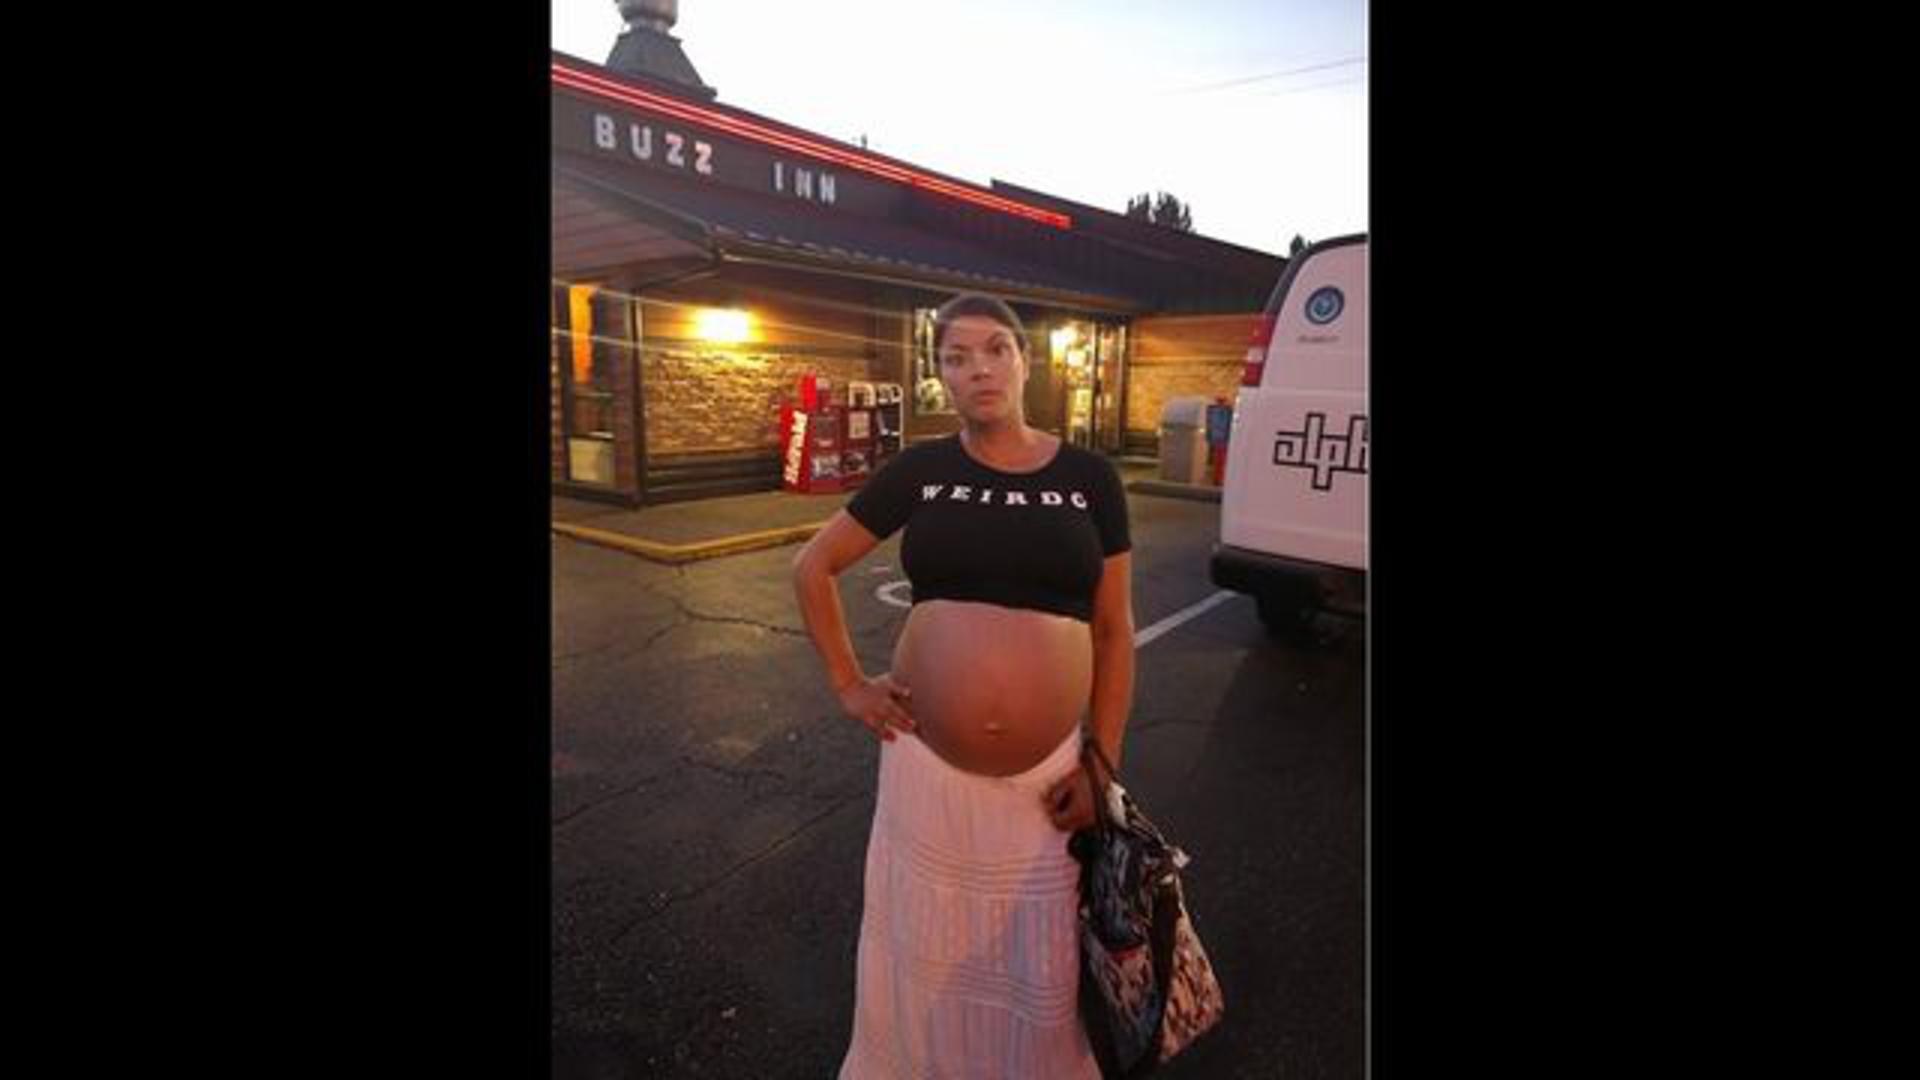 Jedna trudnica iz Amerike šokirala se kada je u lokalnom restoranu nisu htjeli poslužiti jer je neprikladno odjevena. Nosila je blizance, a na sebi je imala ''crop top'' i dugačku suknju. No problem je bio u njezinu trbuhu koji je bio potpuno otkriven. Nakon što se njezina objava proširila po internetu, restoran se ispričao trudnici za ''nesporazum''